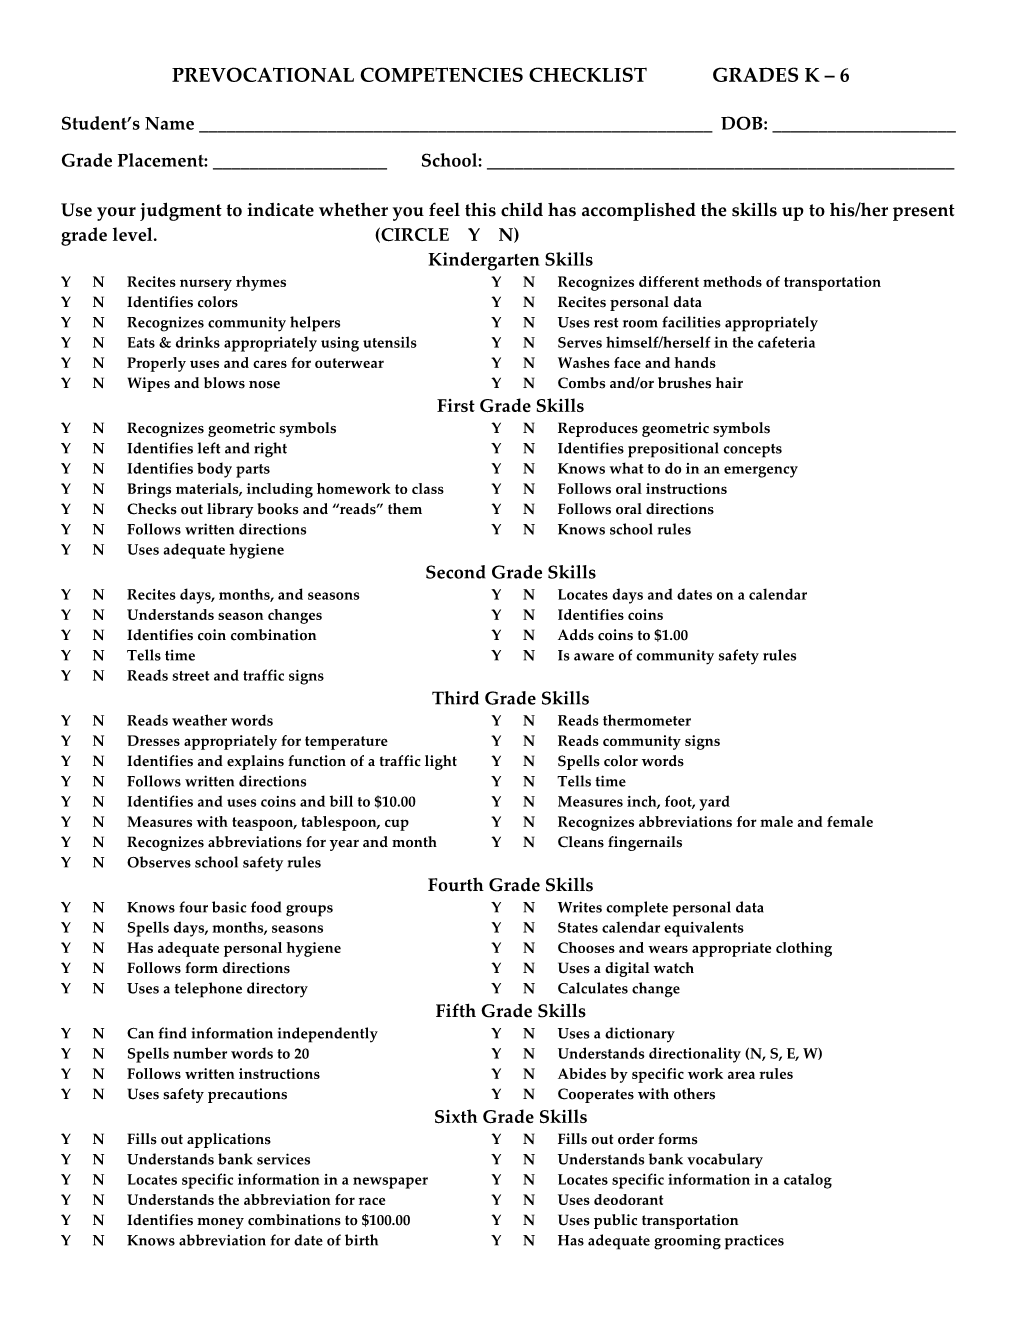 Prevocational Competencies Checklist